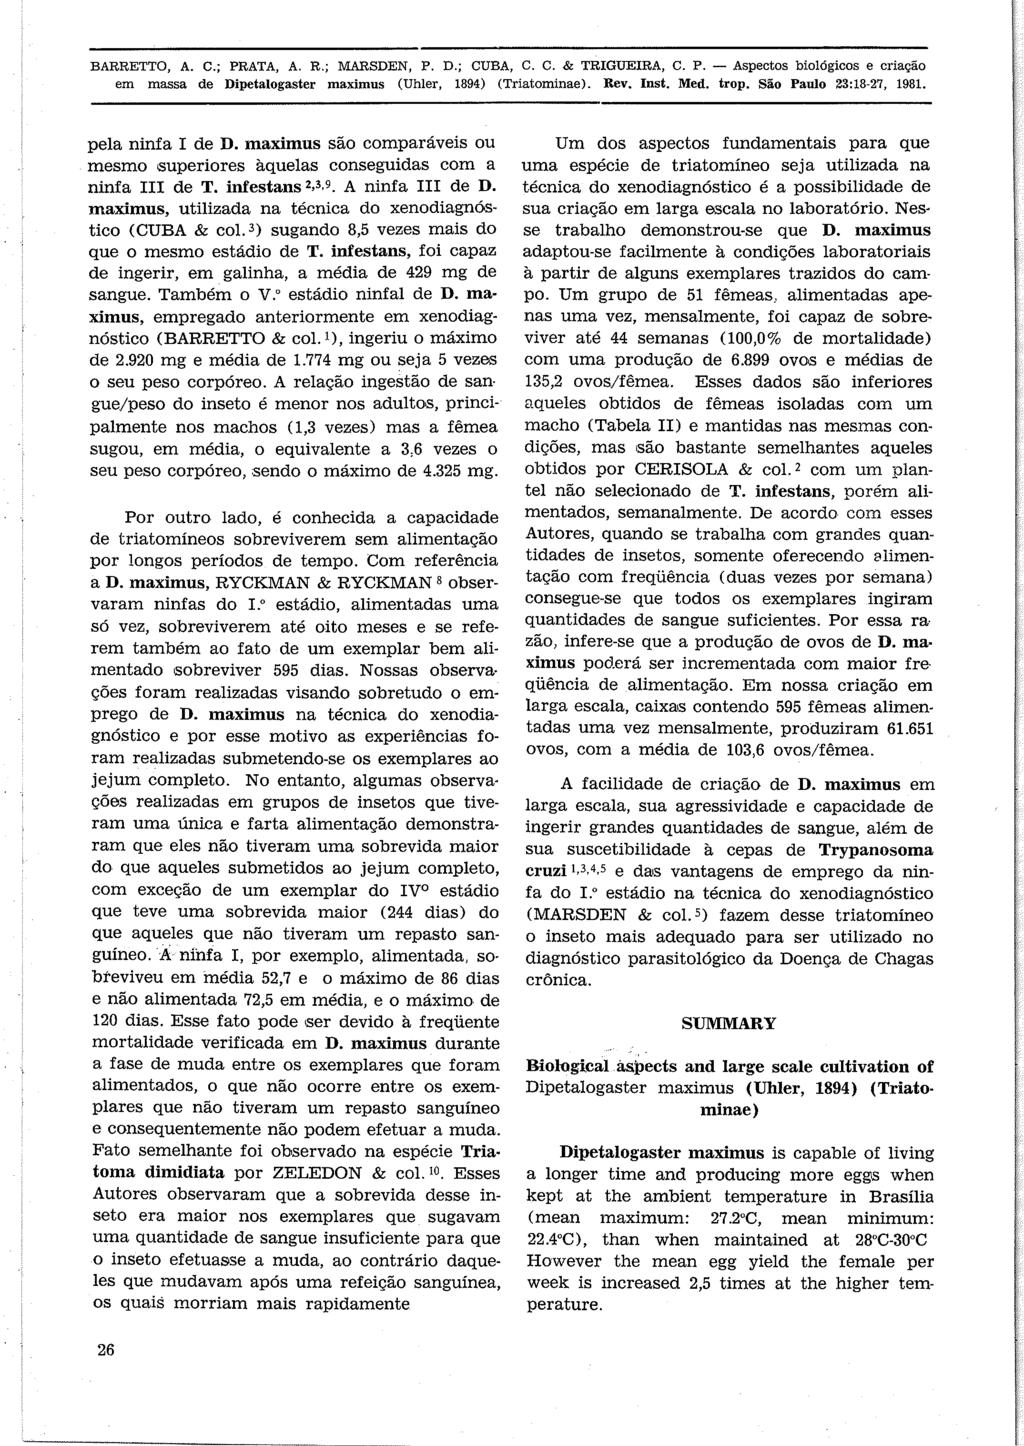 BARRETTO, A. C.; PRATA, A. R.; MÄRSDEN, P. D.; CUBA, C. C. & TRGUERA, C. P. - Aspectos biológicos e cìiaçáo em massa de Dipetalogaster maximus (Uhler, 1894) (Triatominae). Rev. nst.